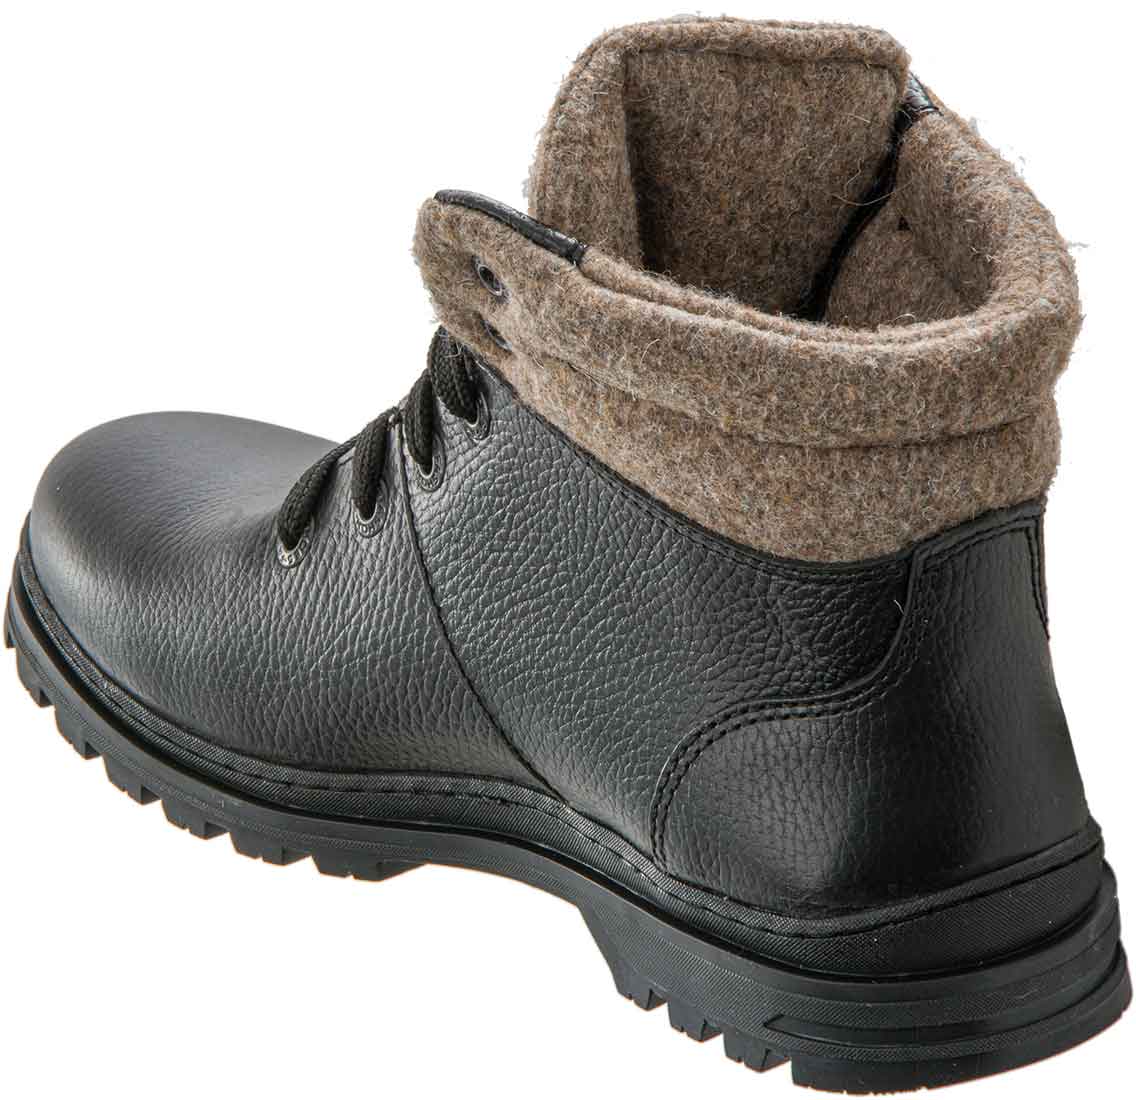 Зимние черные ботинки «Ричмонд» с войлоком – купить по цене производителя сдоставкой по России